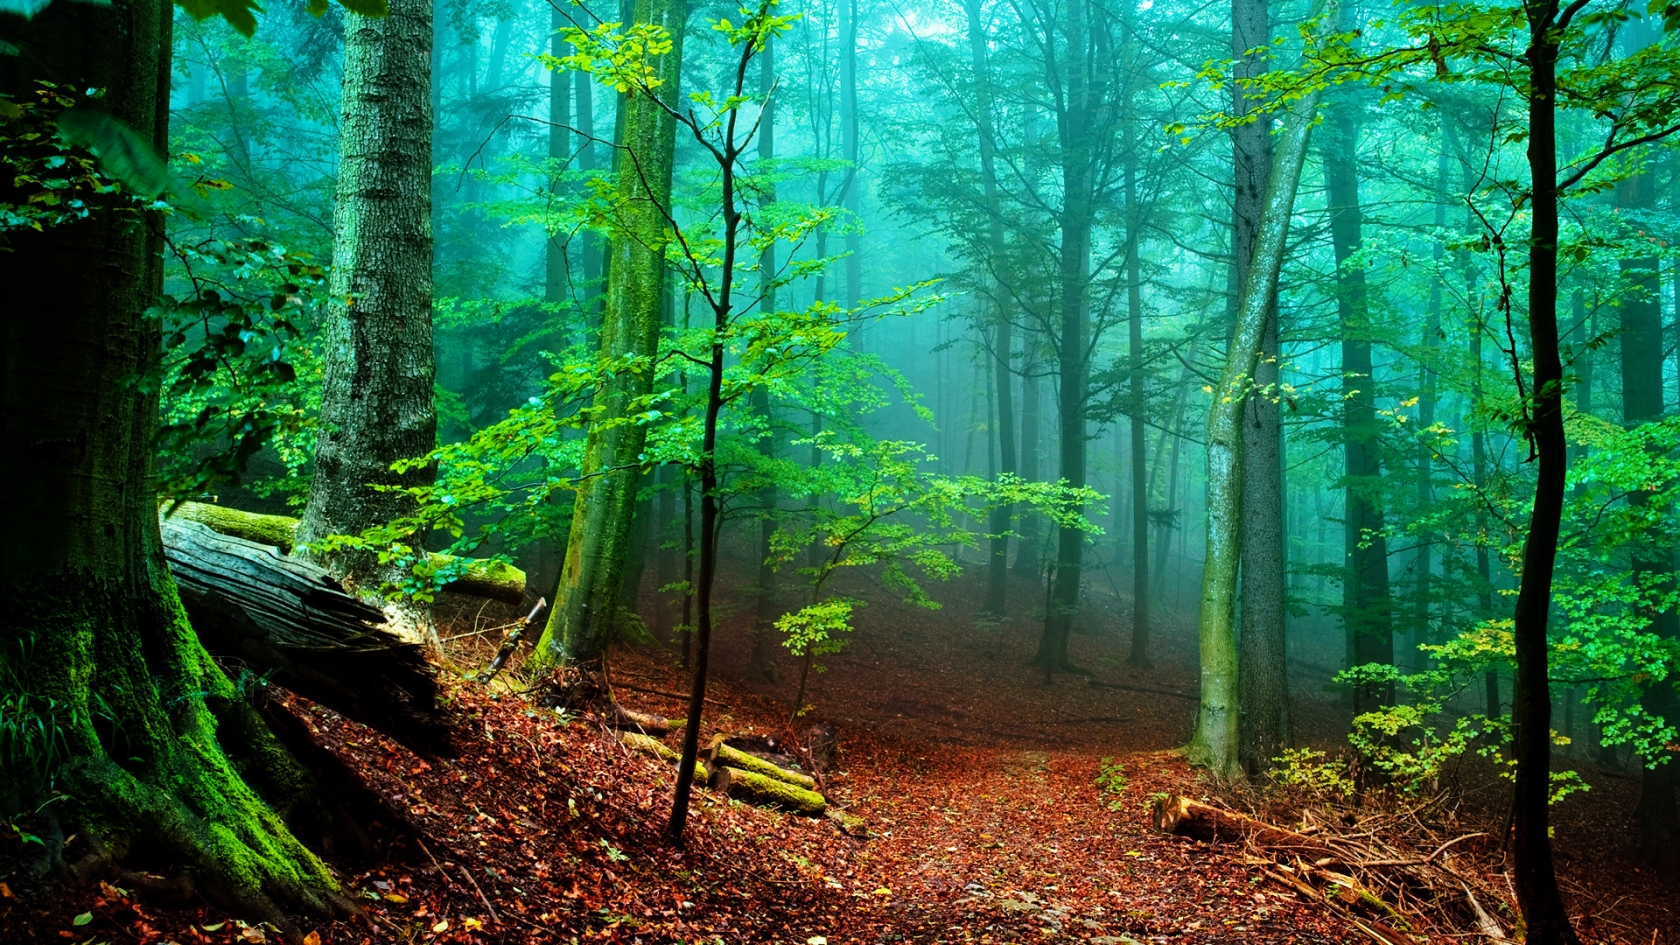 Forest Fog for 1680 x 945 HDTV resolution